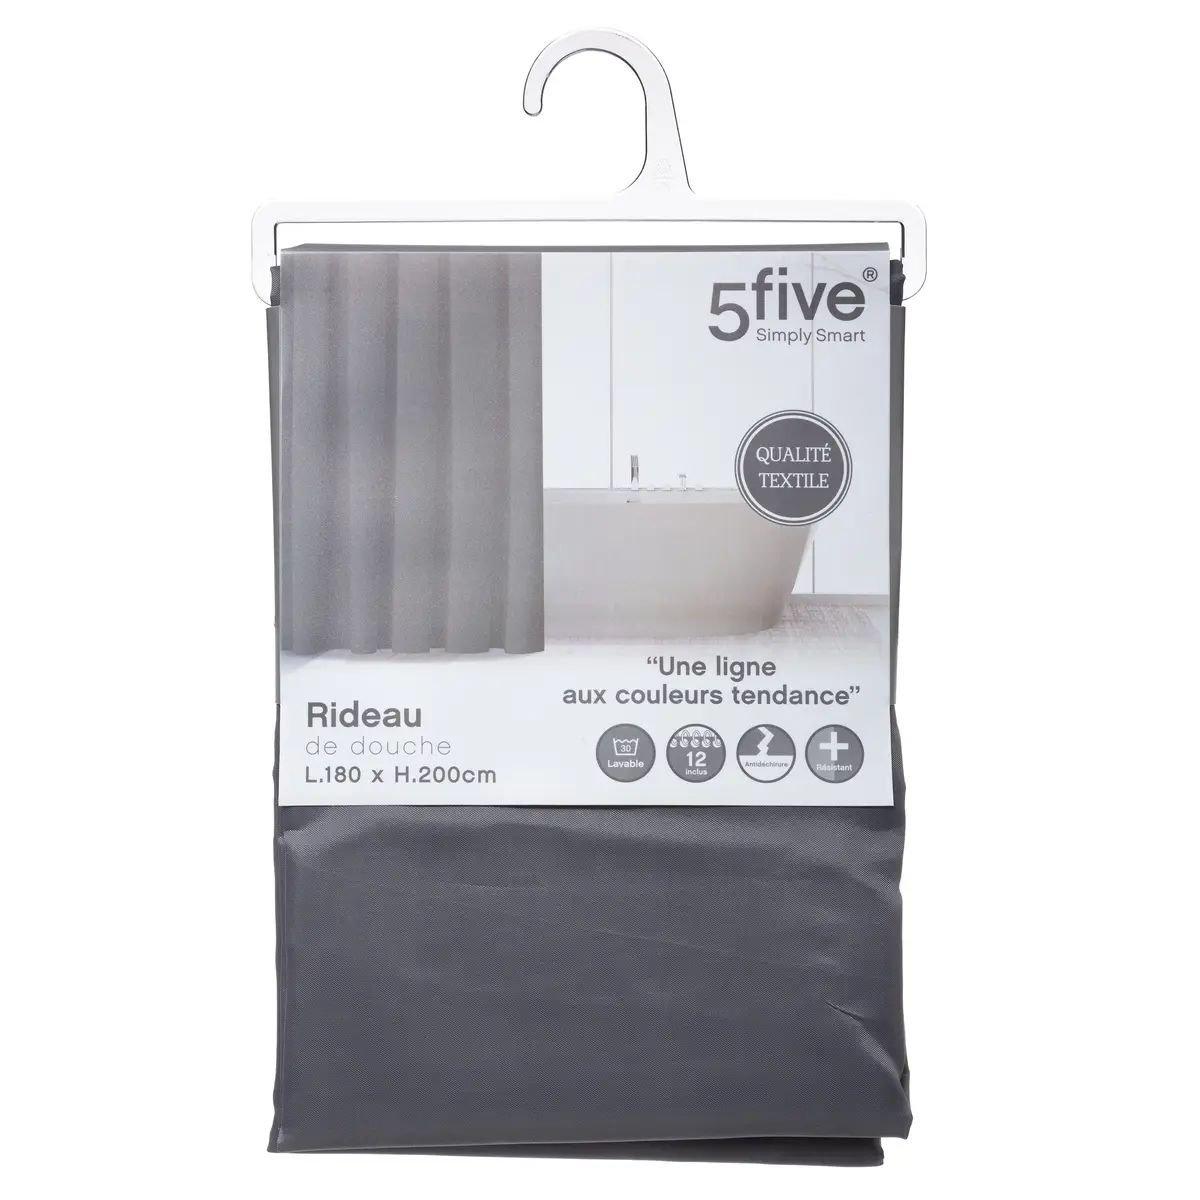 5five Duschvorhang – Polyester – Grau  